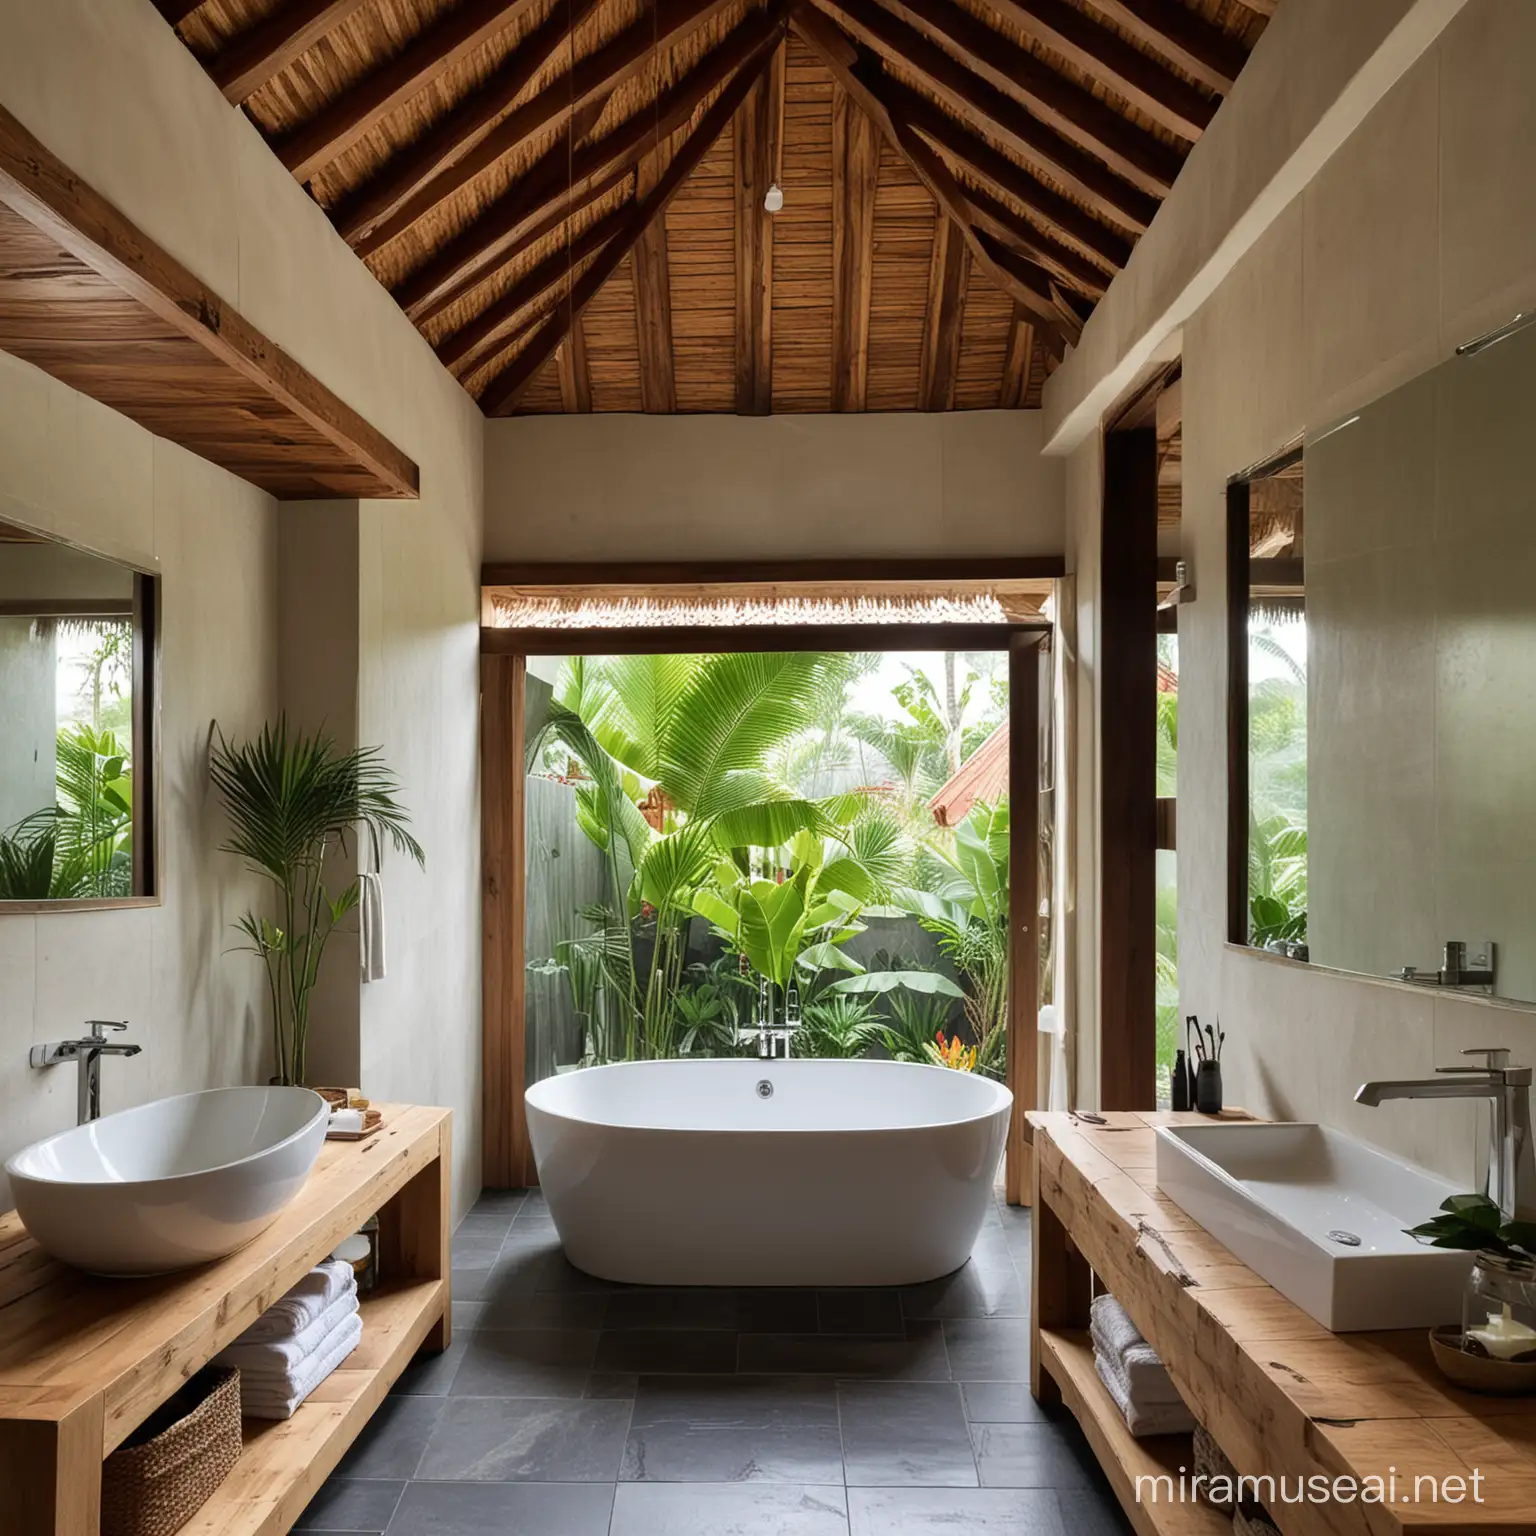 Bathroom in Bali, wood roof, tile floor, bath, wood vanity, shower.